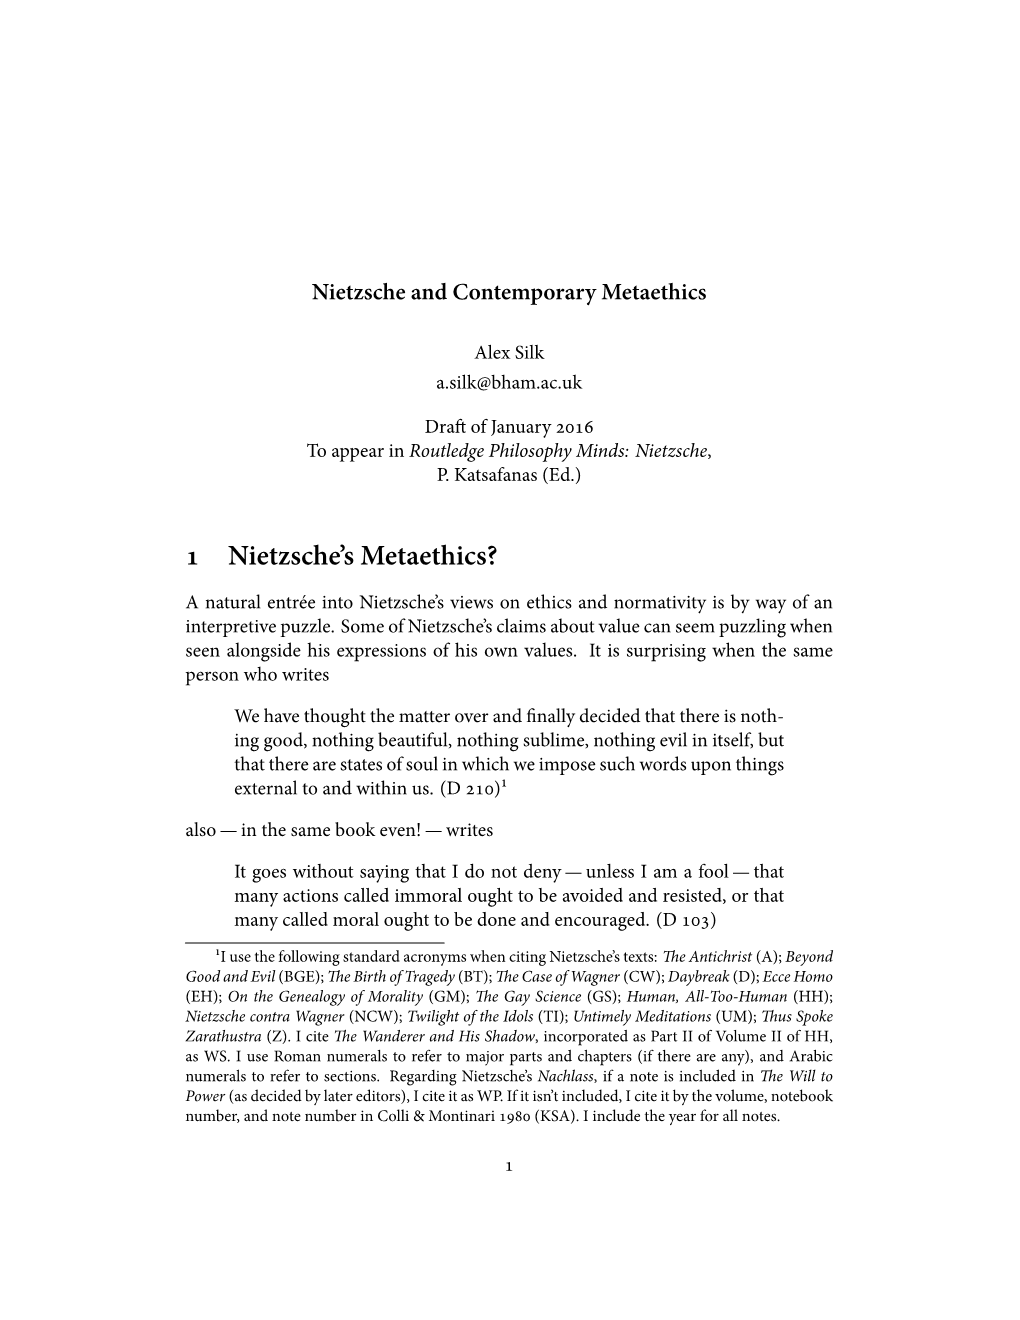 1 Nietzsche's Metaethics?